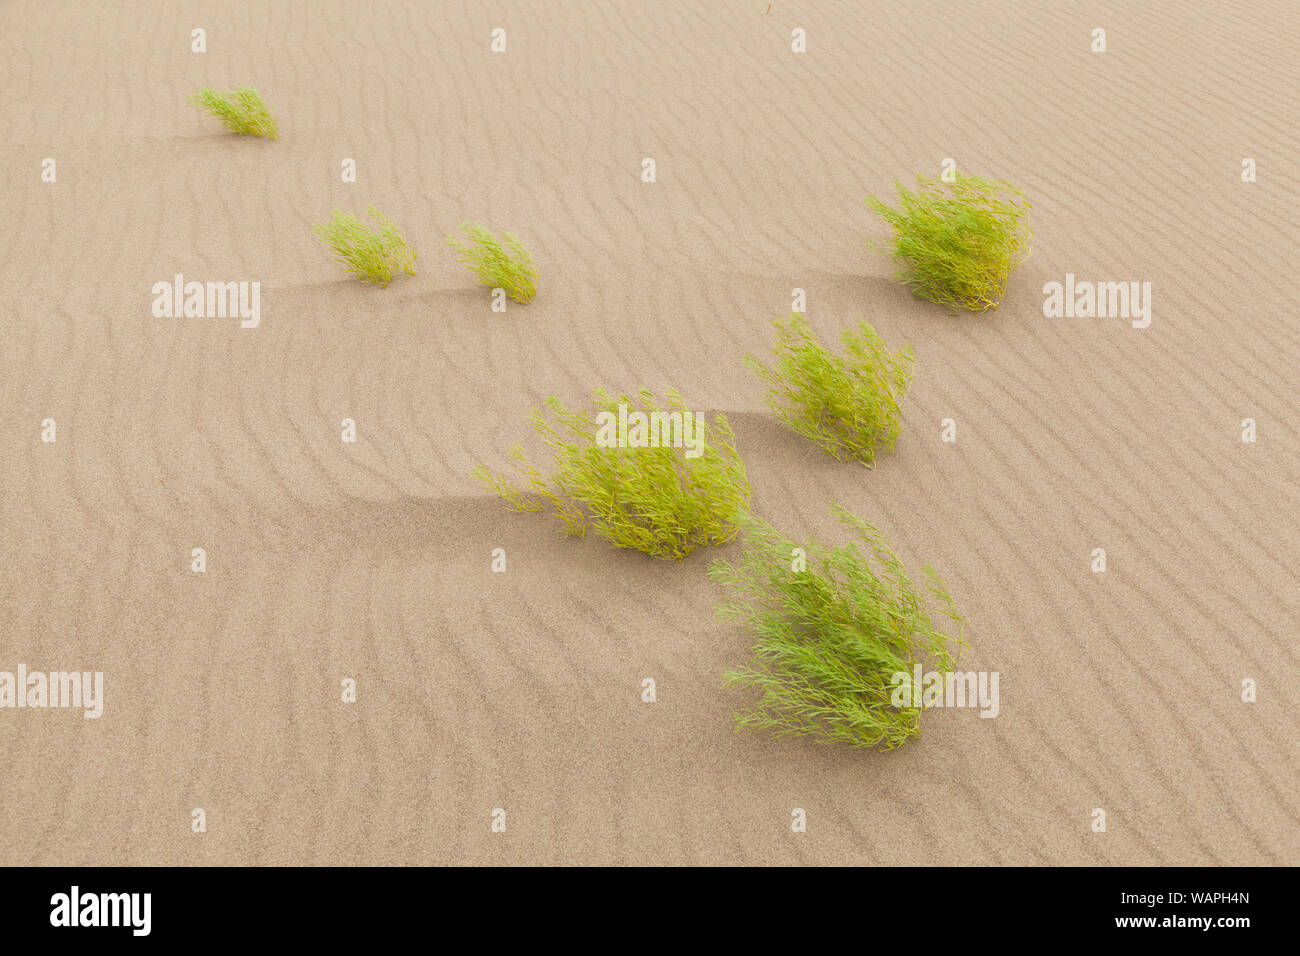 Limón (Psoralea scurfpea lanceolata) en ondulaciones de arena, un gran parque nacional de las Dunas de Arena en Colorado. Foto de stock